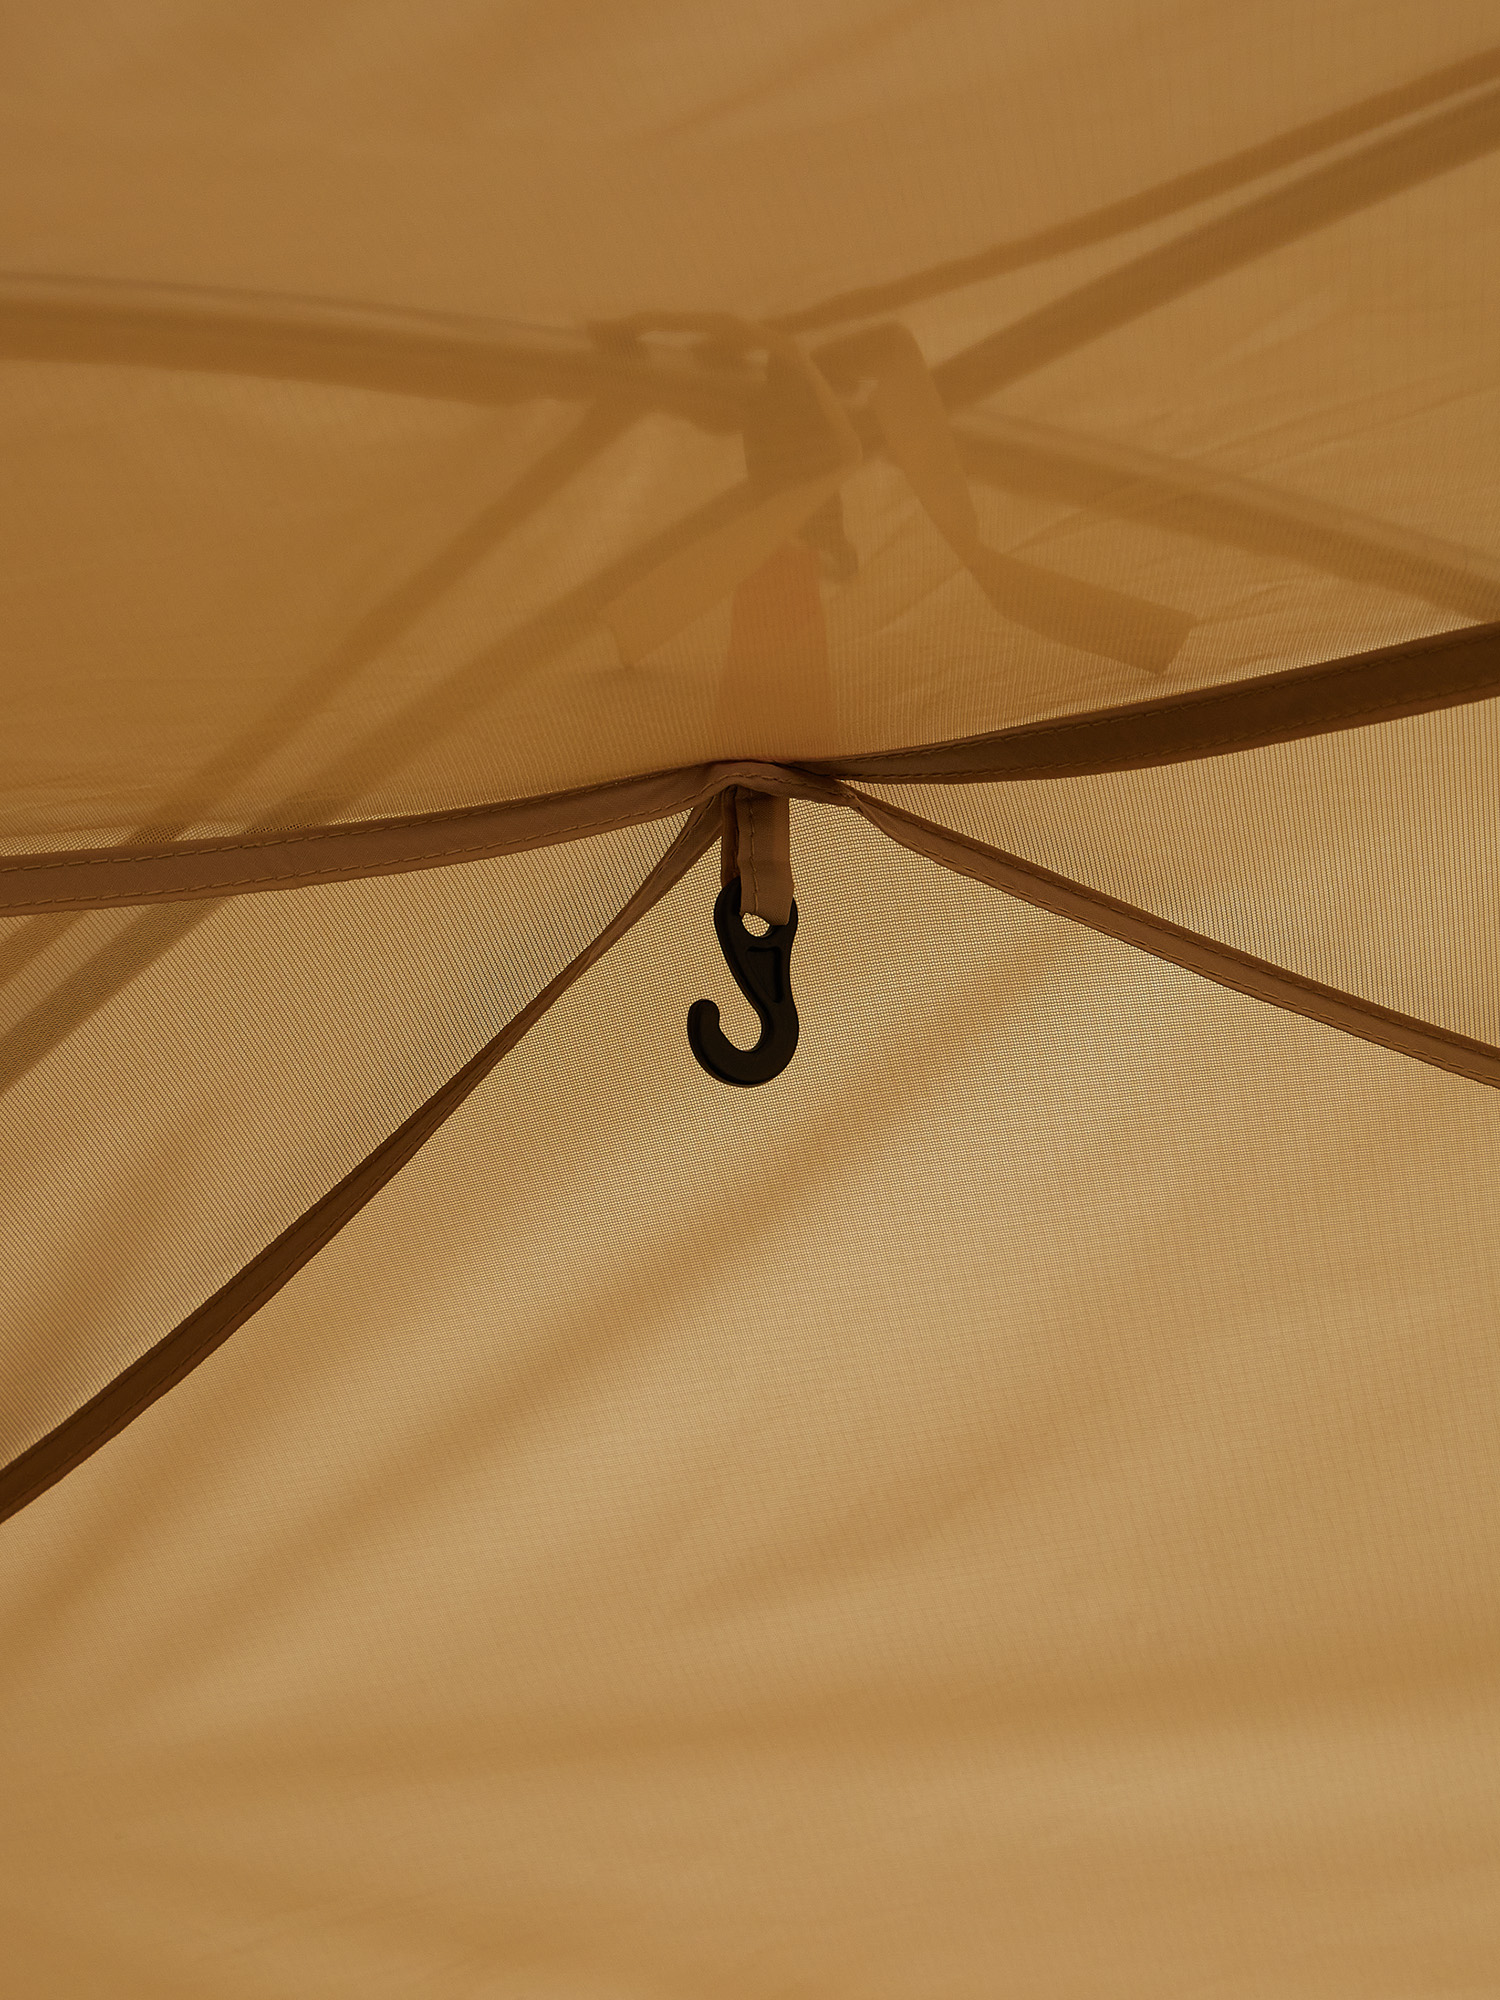 Палатка Toread Wilderness Tent Khaki